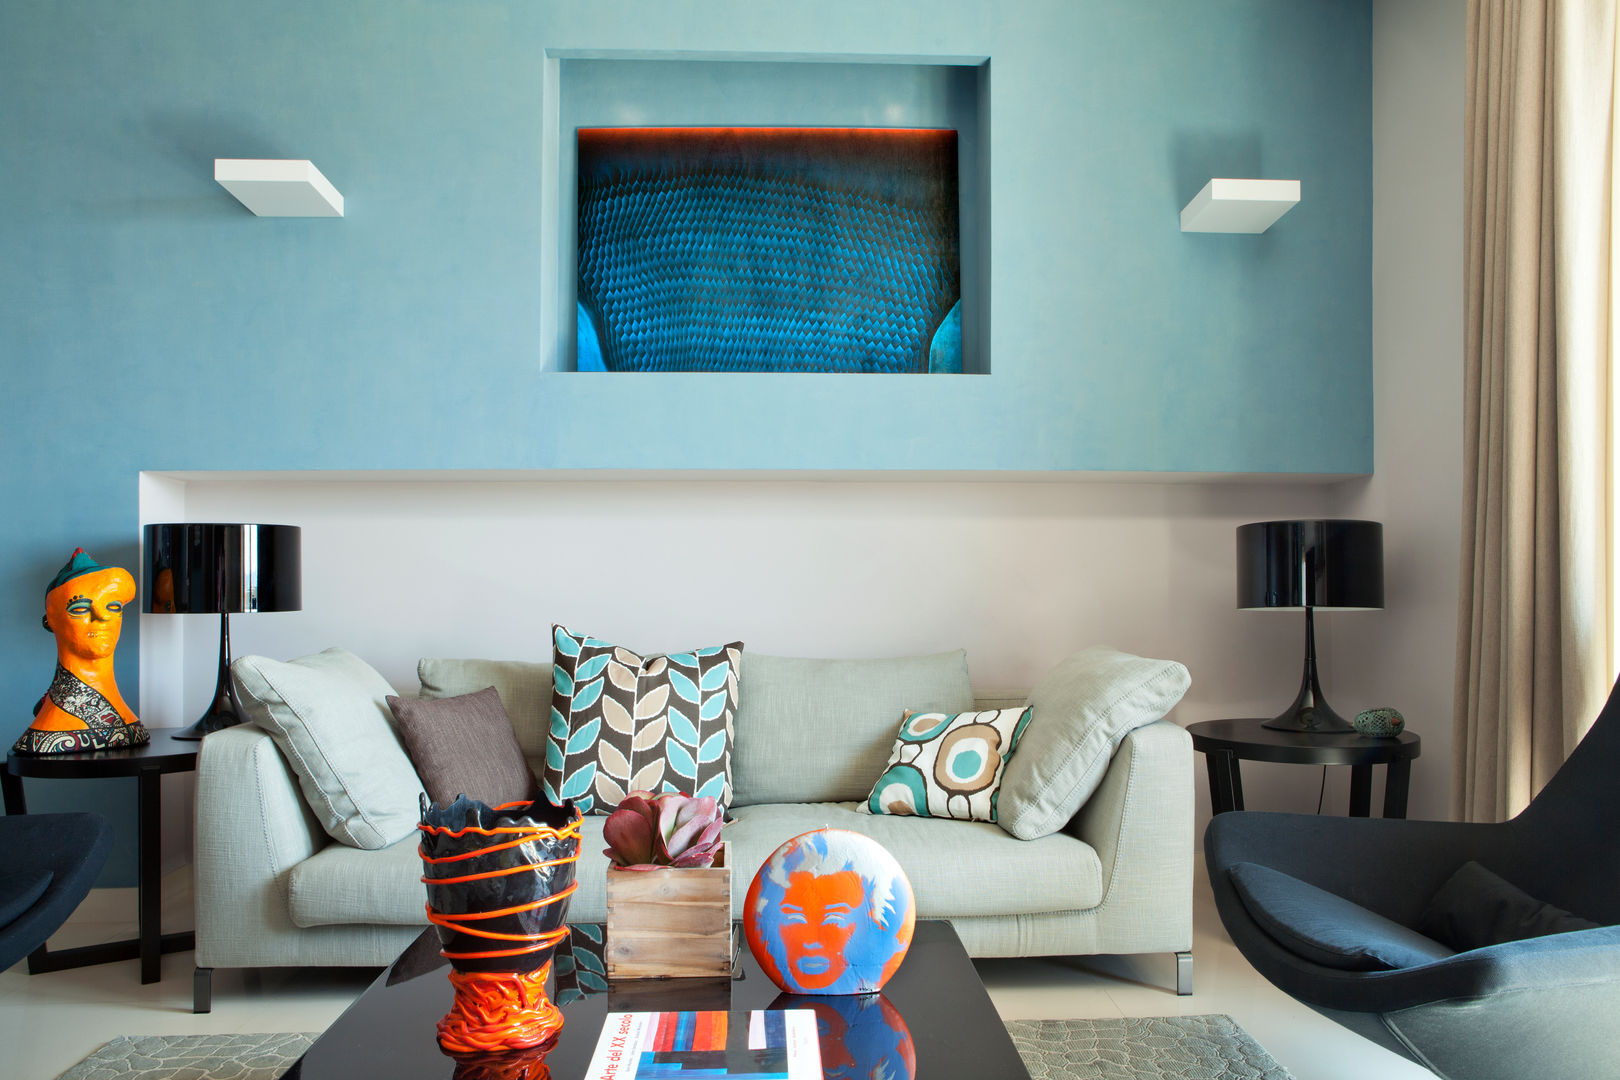 La casa ideale per un single, giovane e colorata, PDV studio di progettazione PDV studio di progettazione غرفة المعيشة Sofas & armchairs